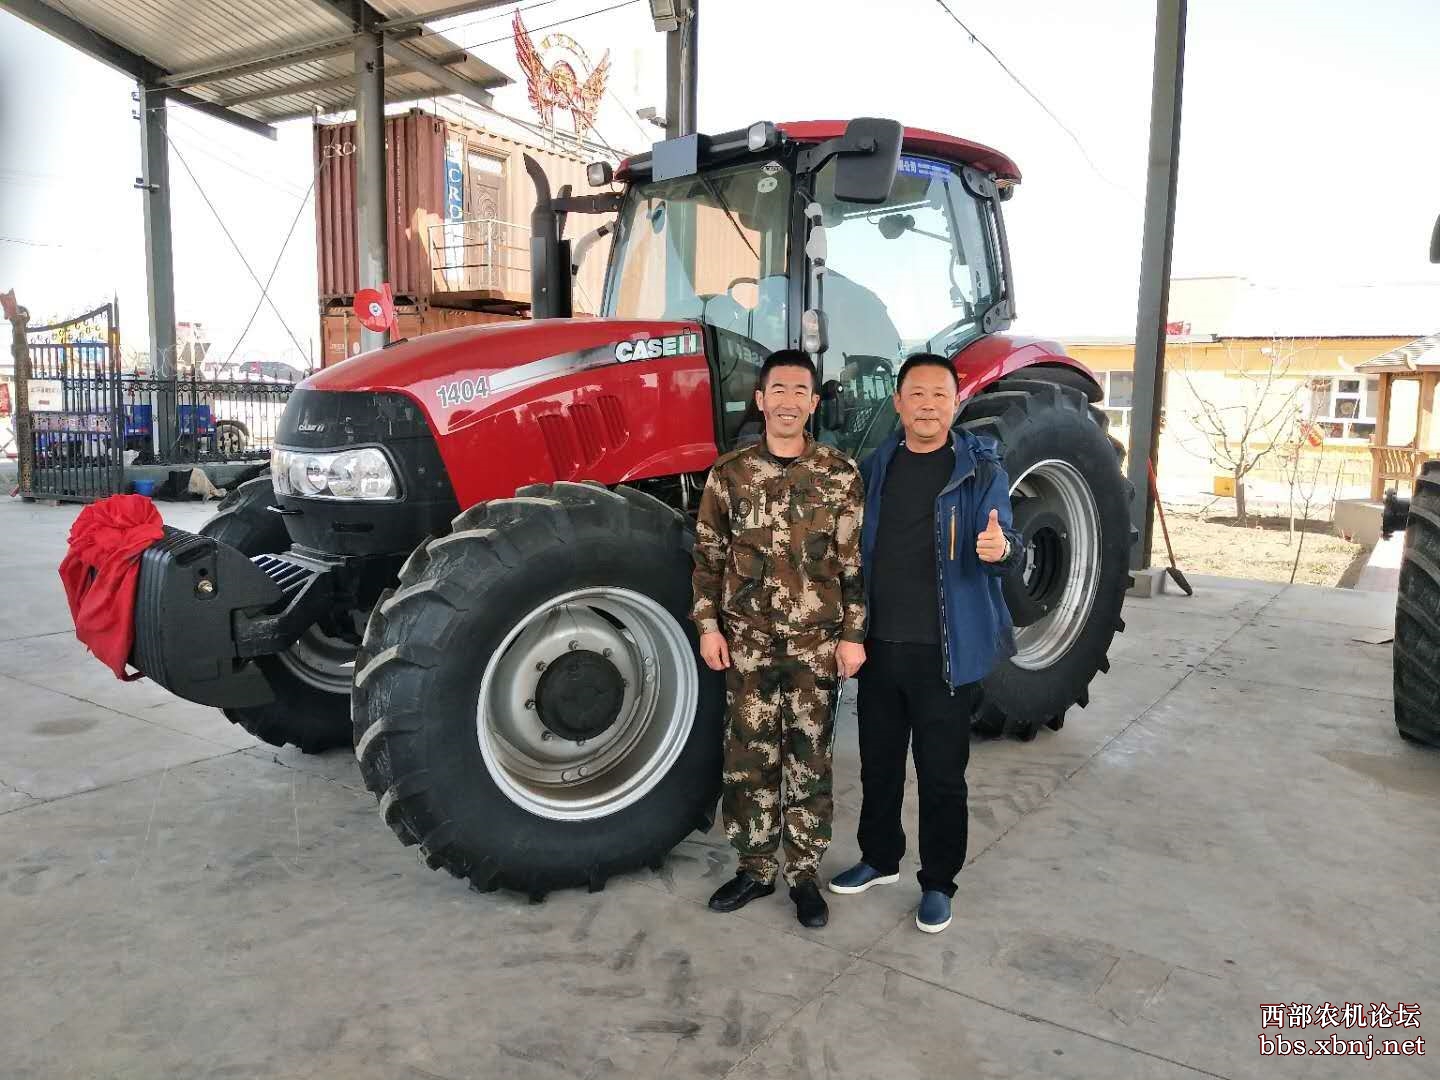 额敏华威2018年首台凯斯1404拖拉机成功销售!